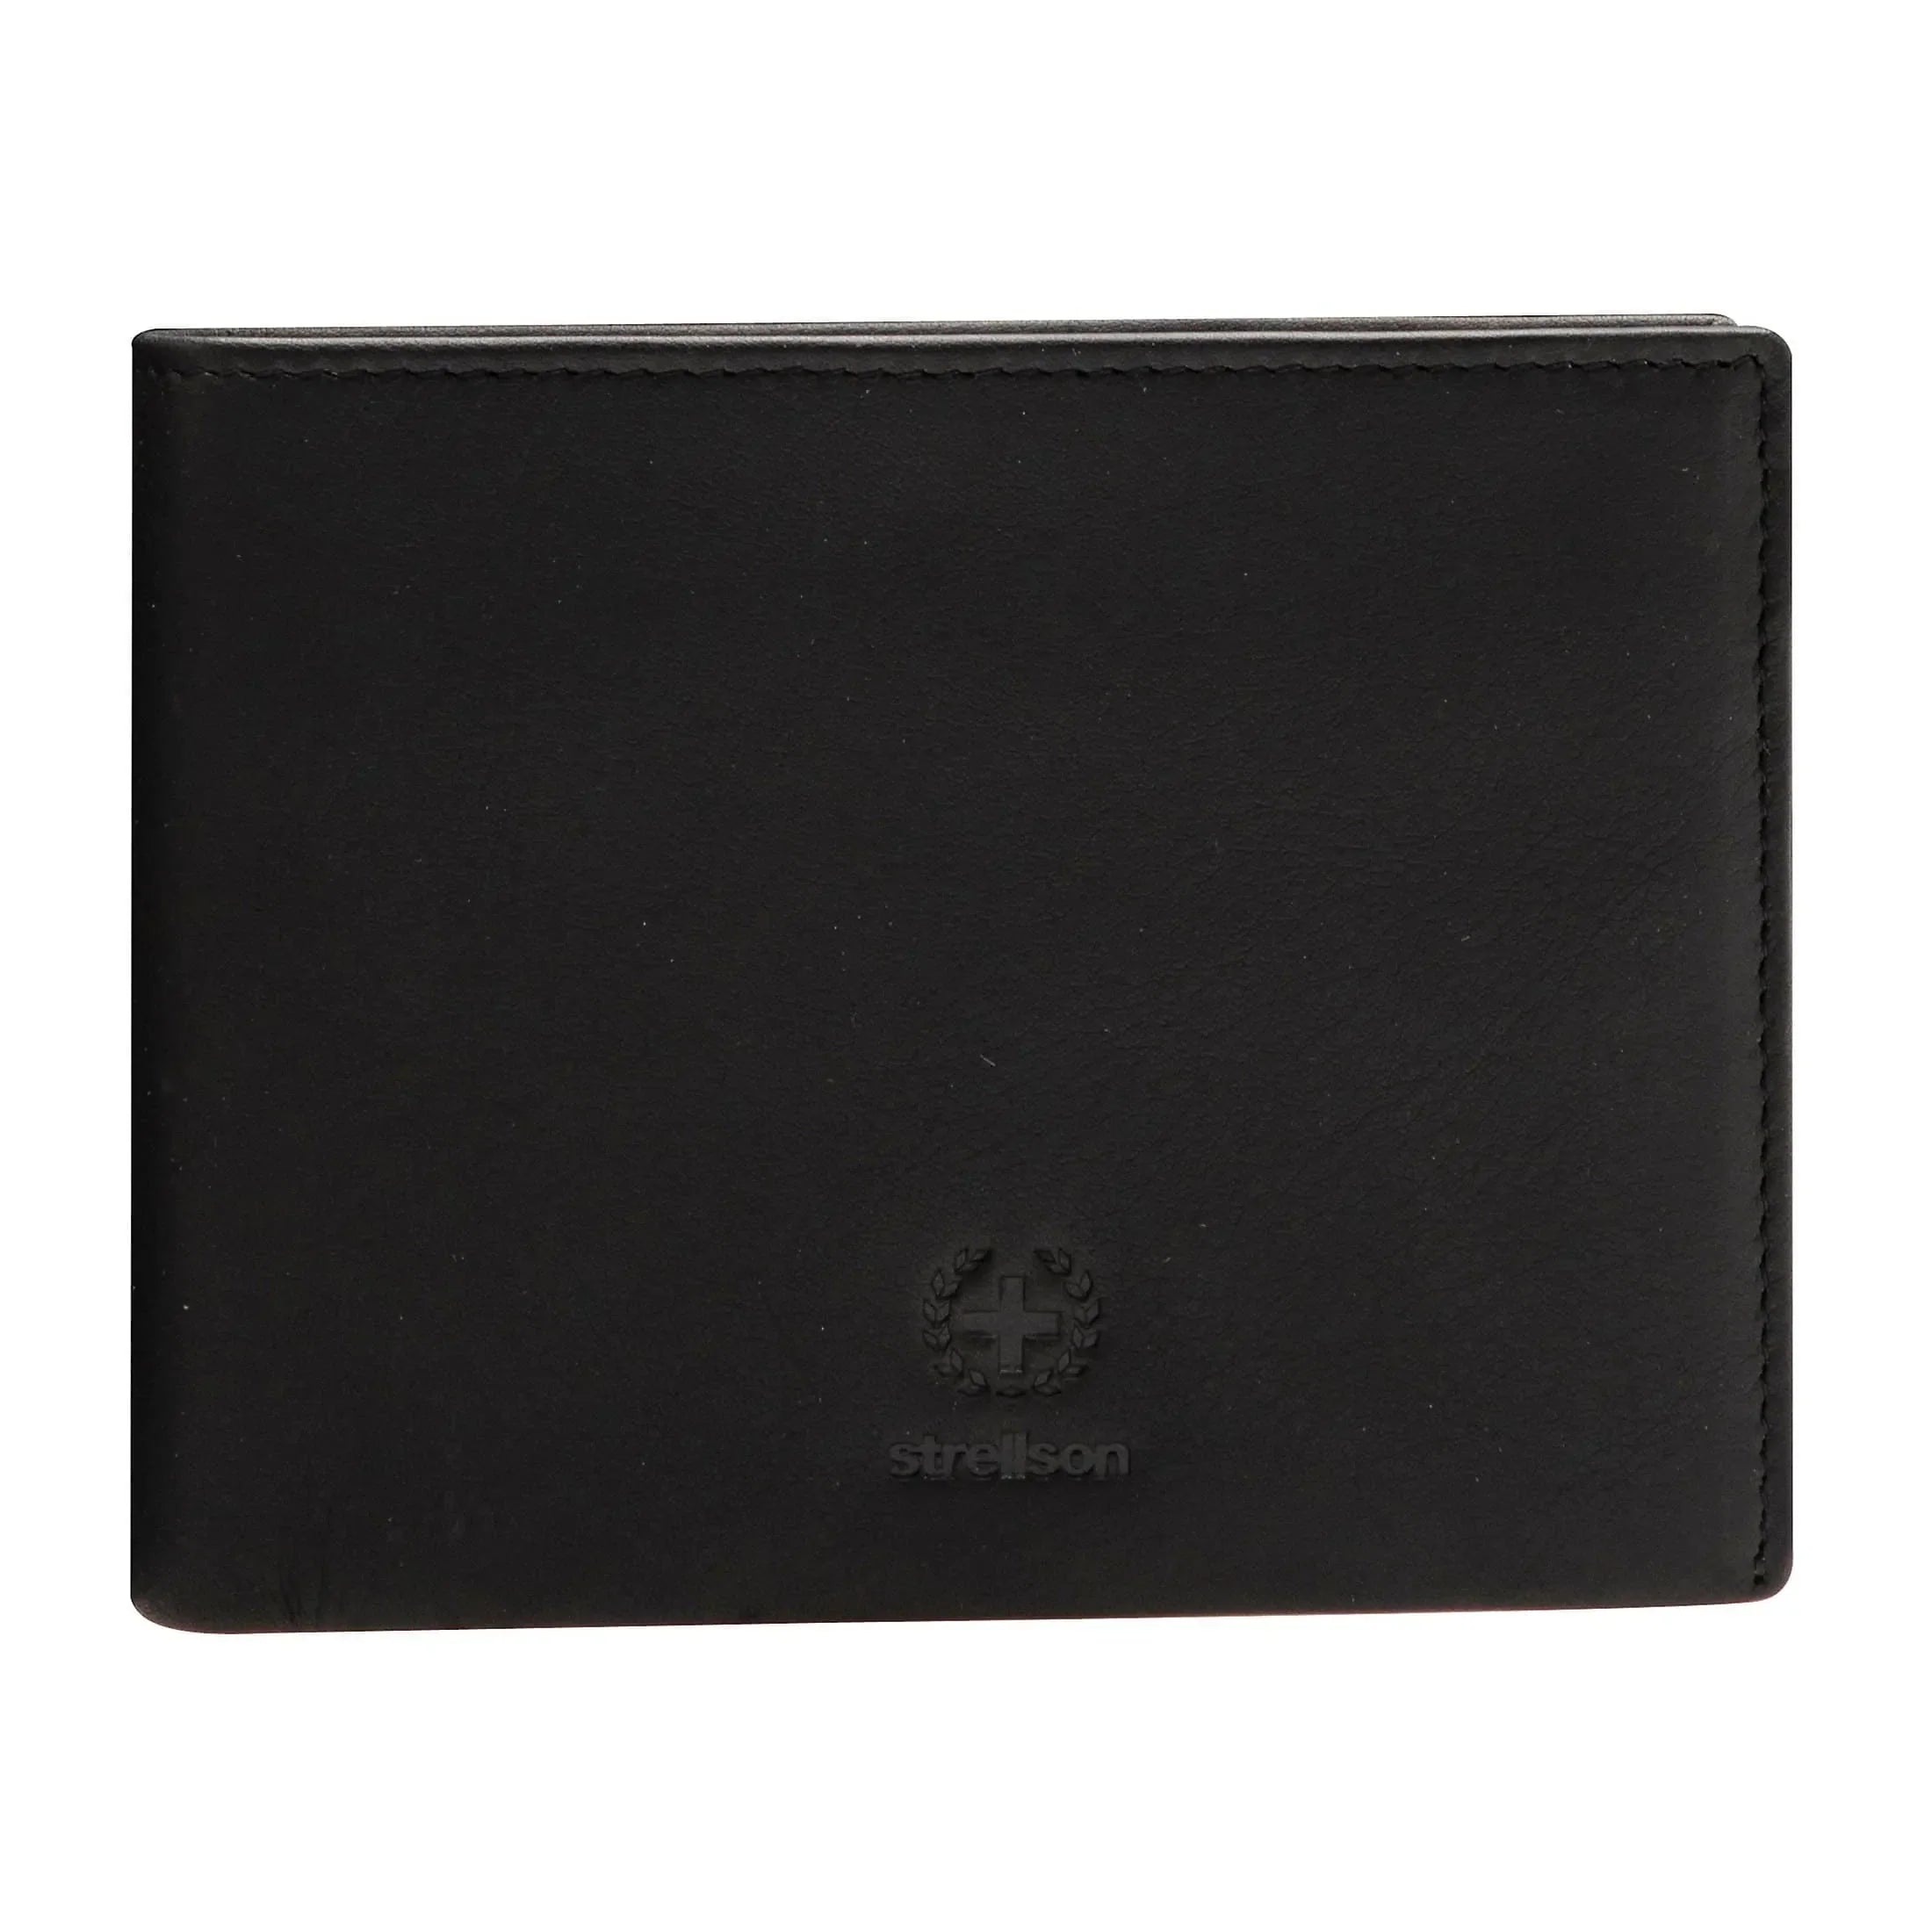 Strellson Blackwall wallet H8 11 cm - Black